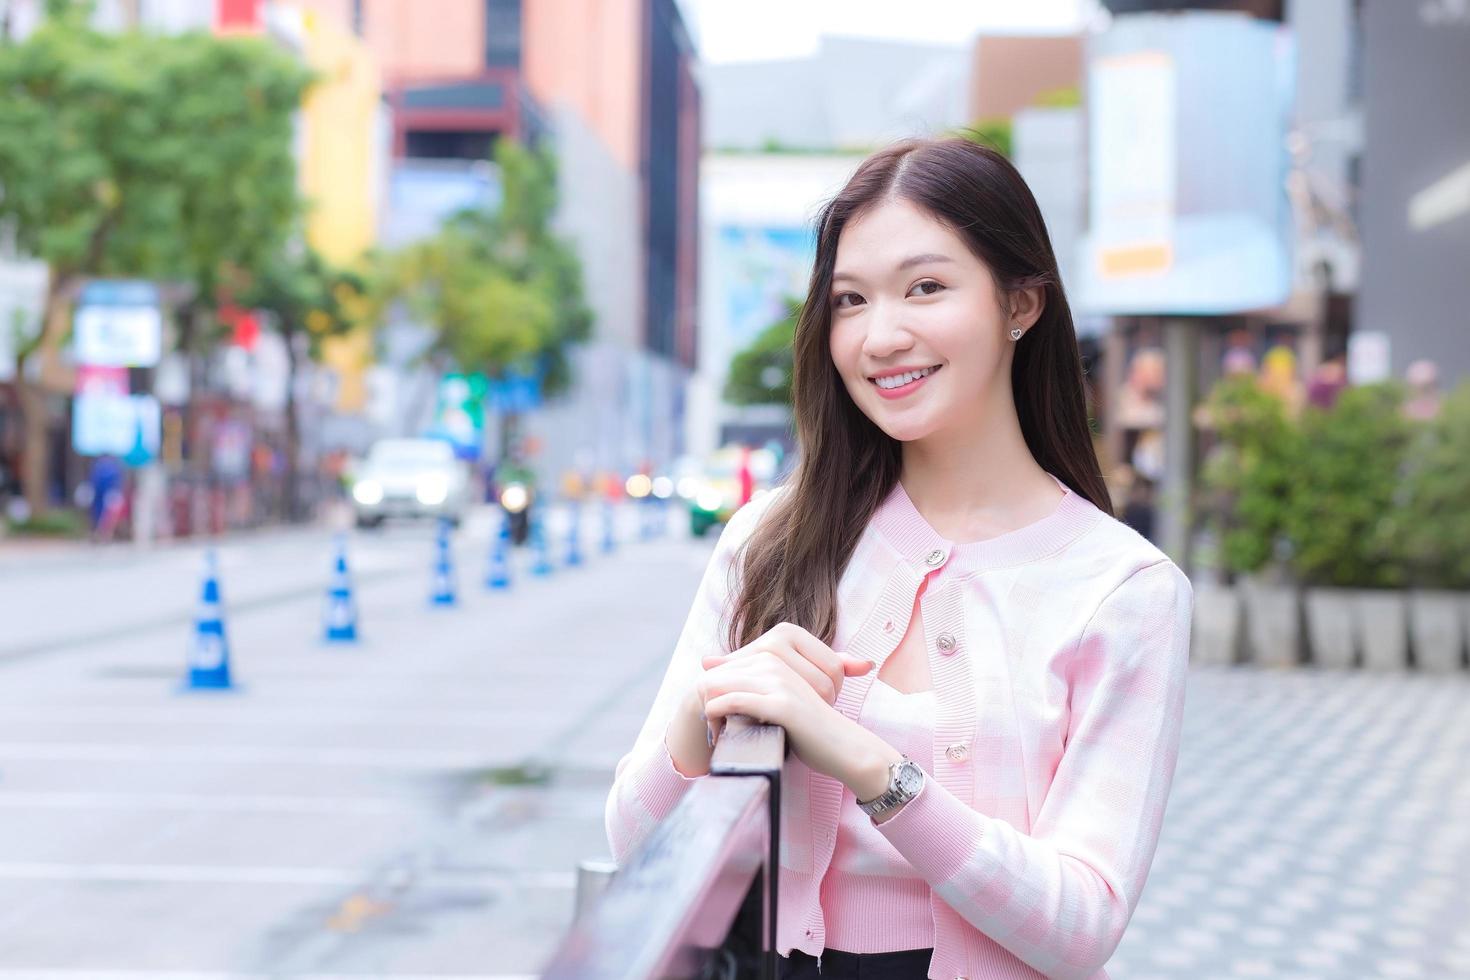 jovem mulher bonita asiática em um casaco listrado rosa e branco está de pé urbano ao ar livre ela olha para a câmera com a cidade e a estrada como pano de fundo. foto